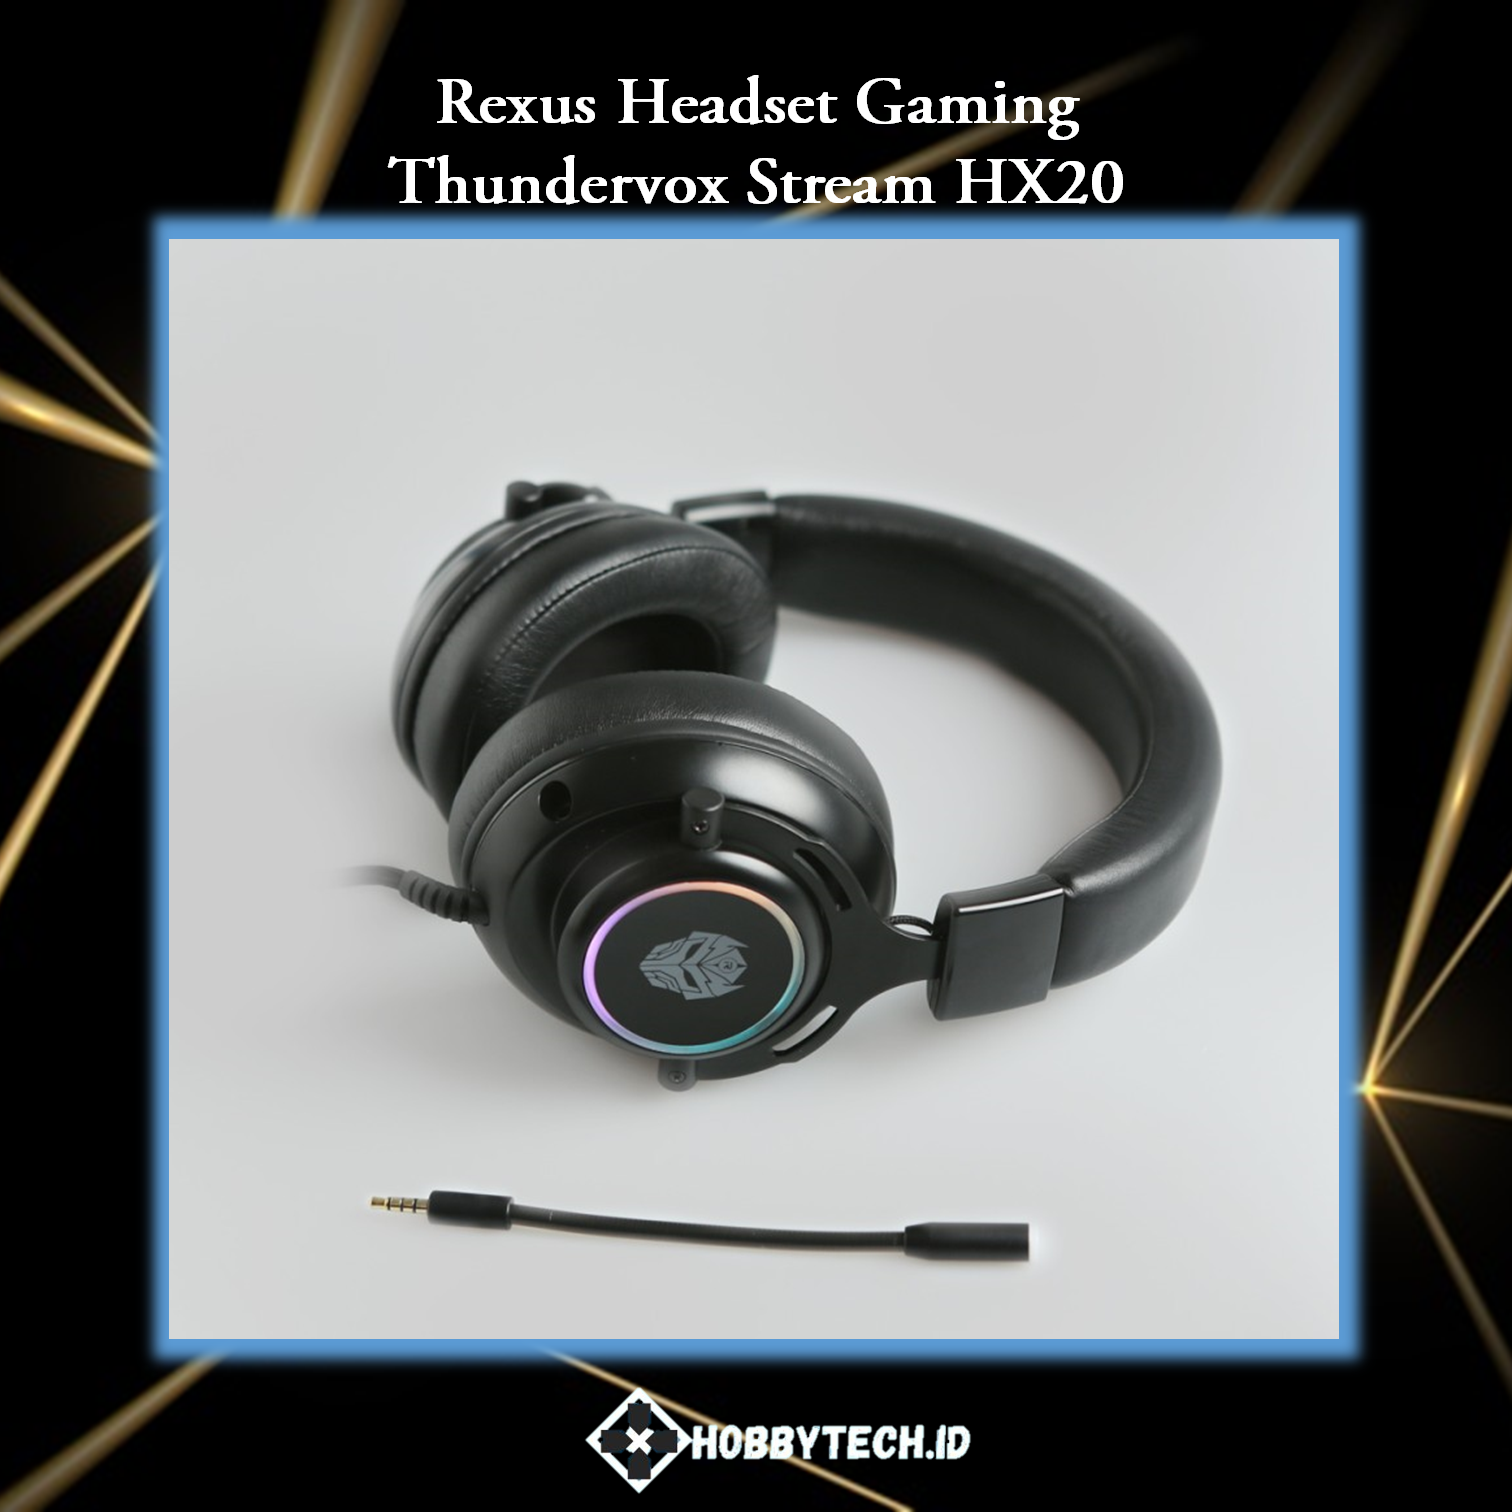 Rexus Headset Gaming Thundervox Stream HX20